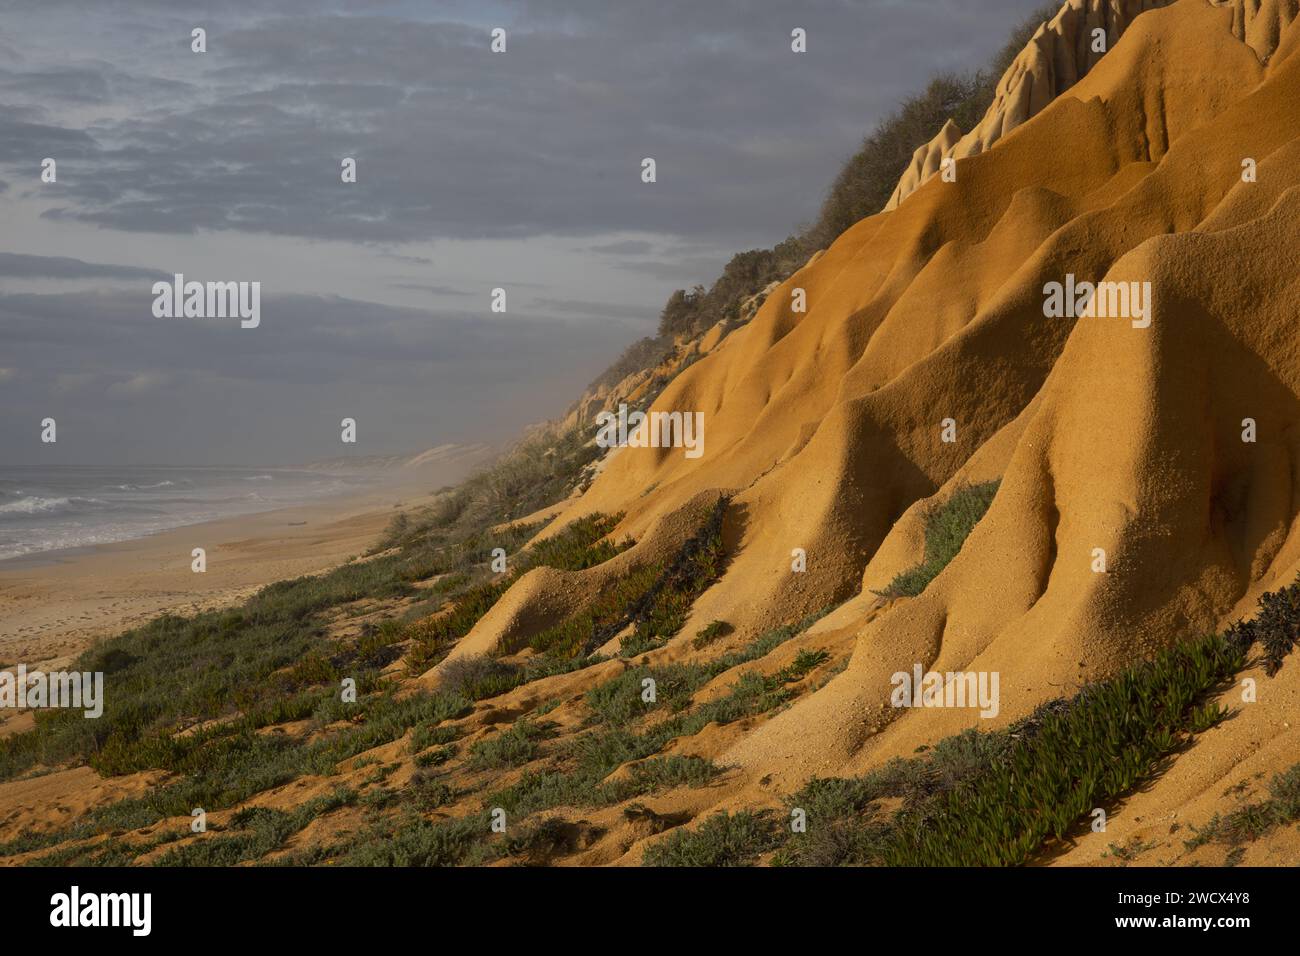 Portugal, Alentejo, plage de Gale Fontainhas, falaises fossiles d'ocre vieilles de cinq millions d'années avec des formes érodées face à l'océan Atlantique Banque D'Images